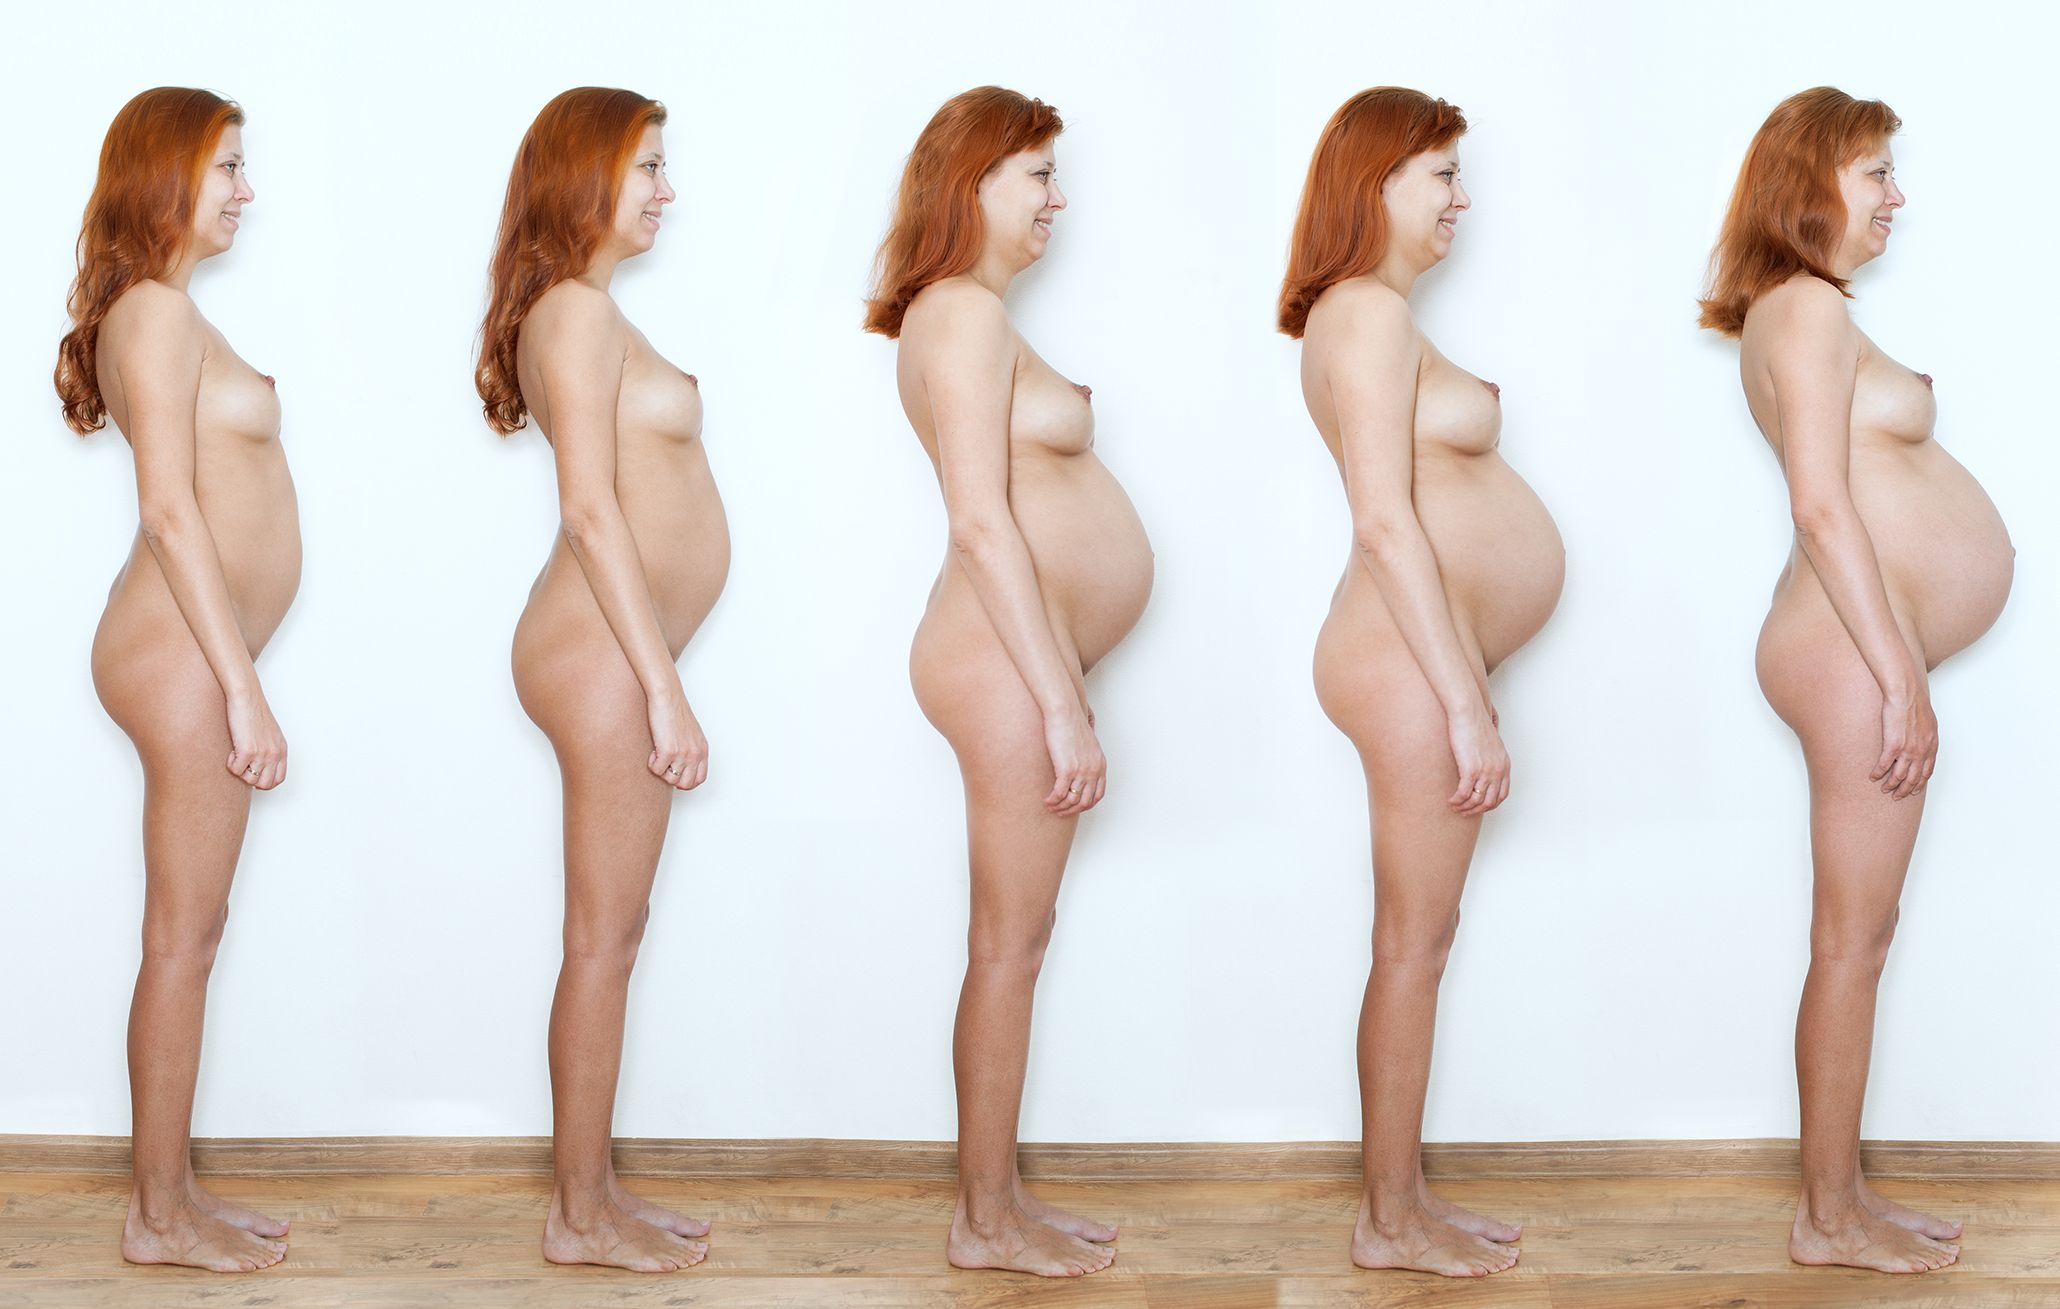 фото женской груди до беременности и во время беременности фото 3